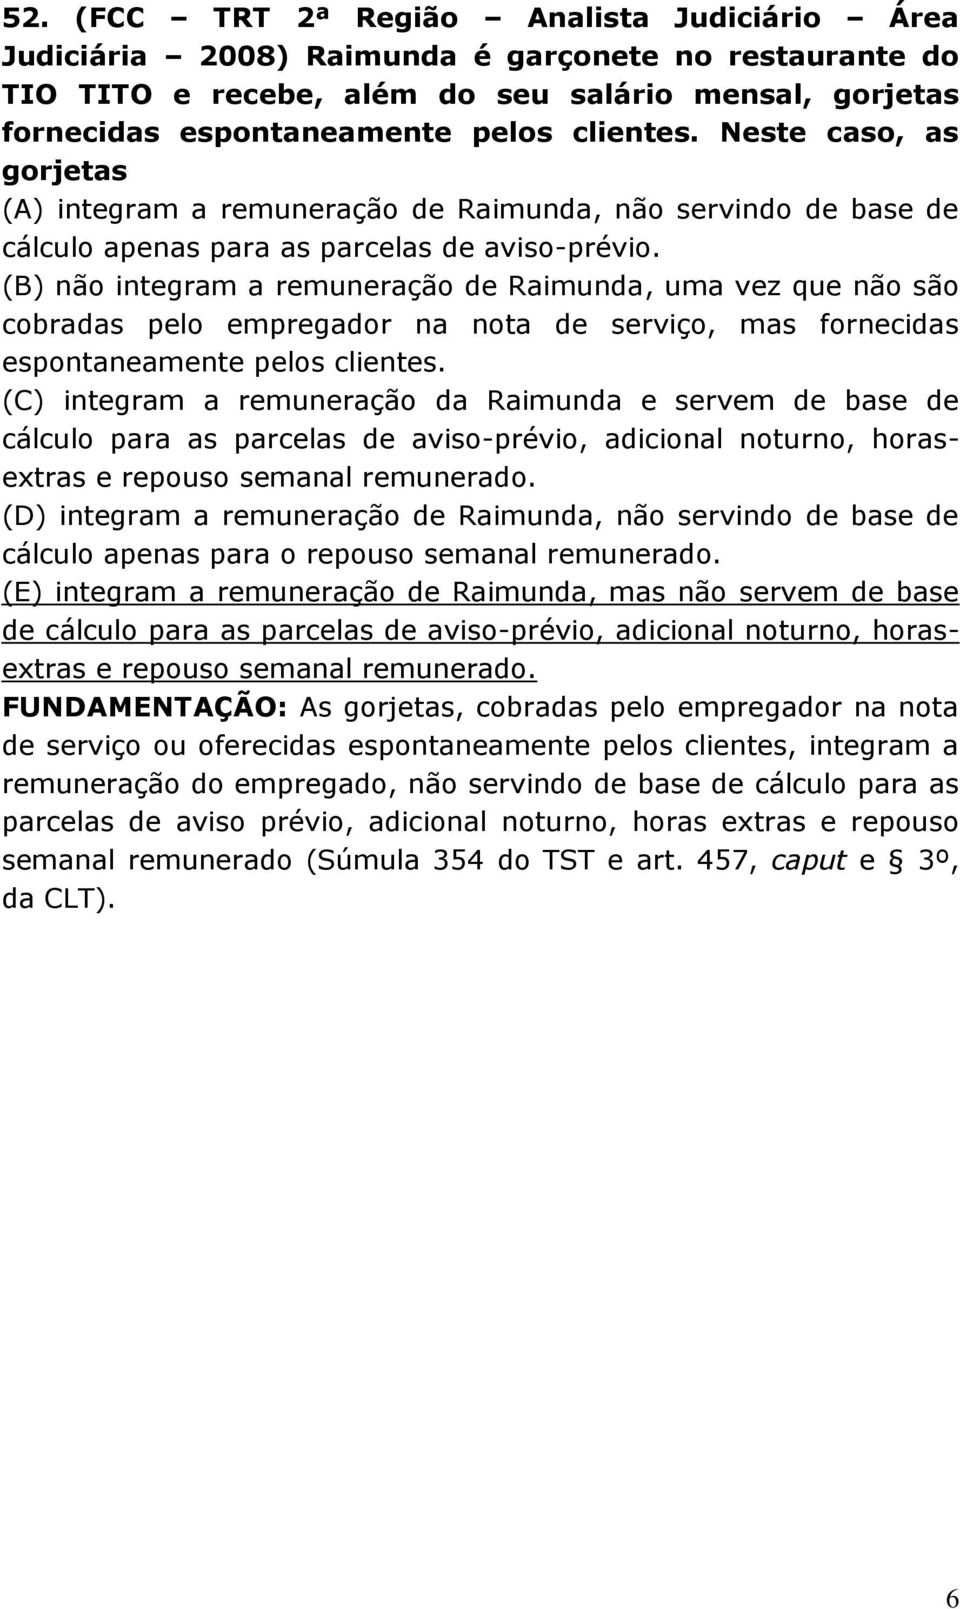 (B) não integram a remuneração de Raimunda, uma vez que não são cobradas pelo empregador na nota de serviço, mas fornecidas espontaneamente pelos clientes.